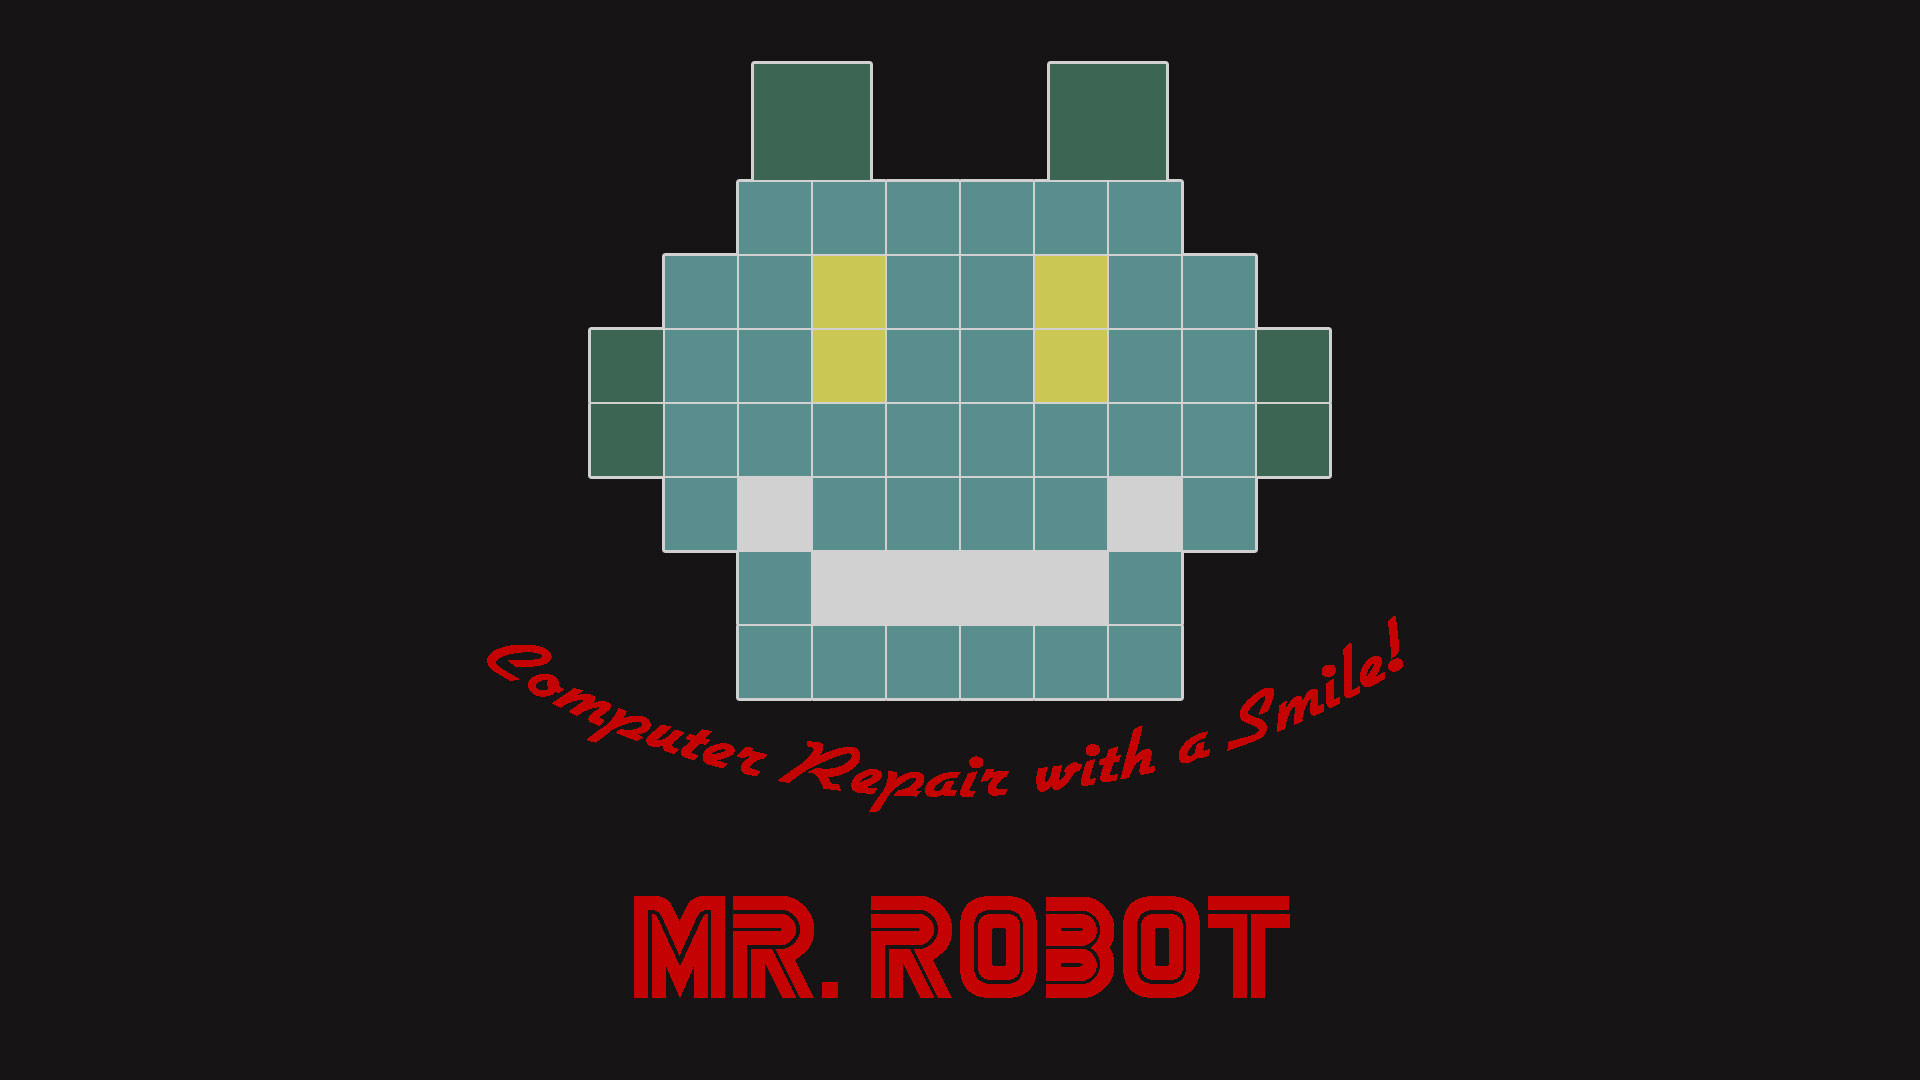 Robot Computer Repair With A Smile - Fsociety Logo De Mr Robot - HD Wallpaper 